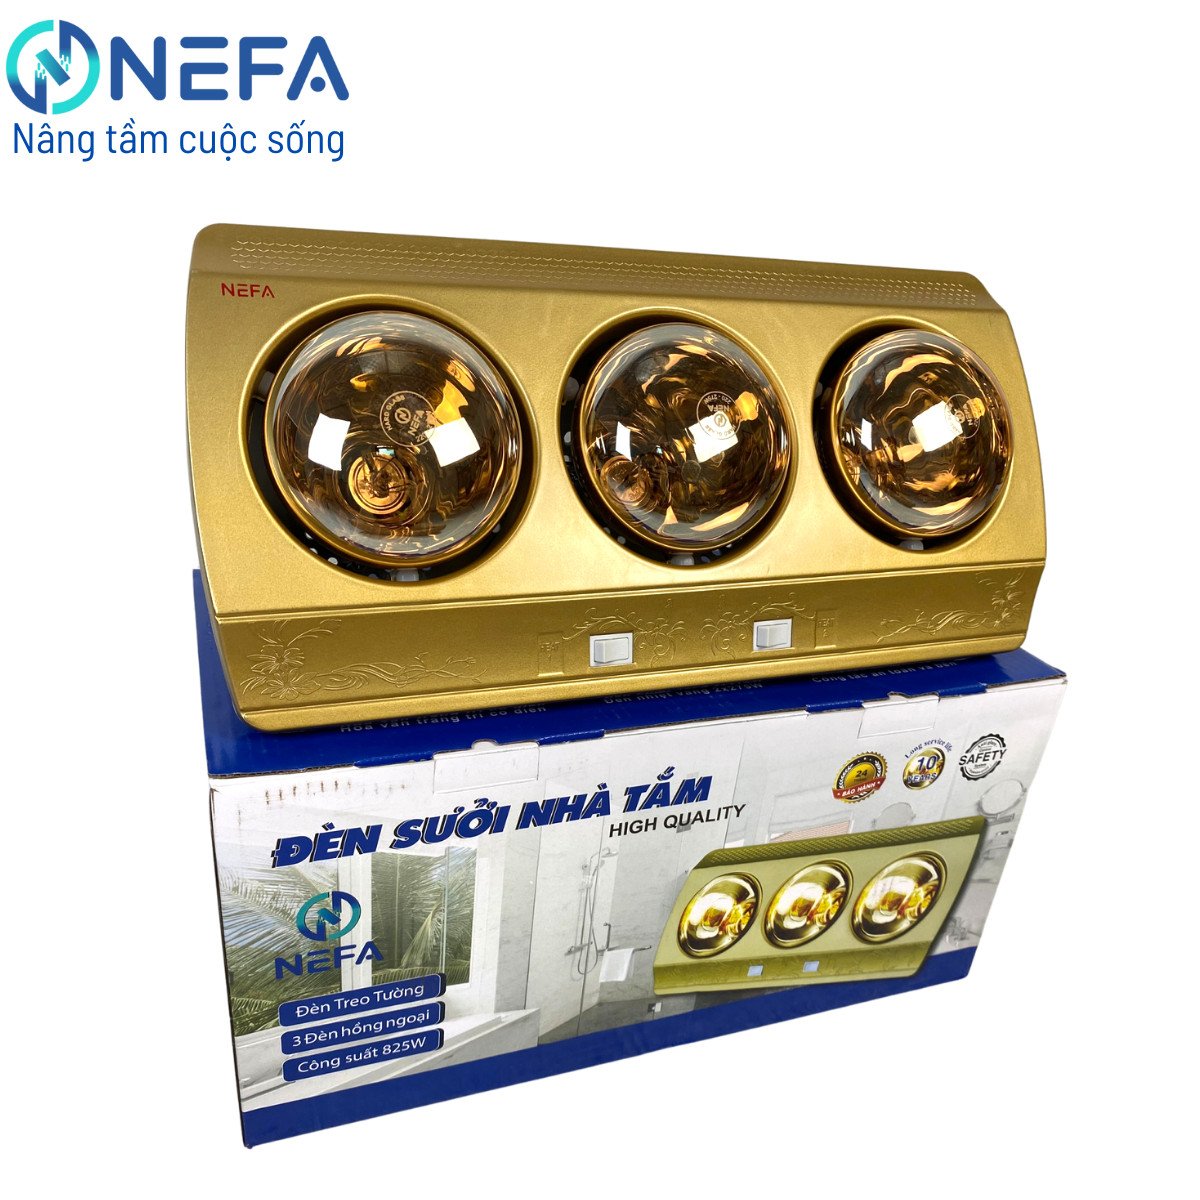 Đèn sưởi nhà tắm 3 bóng Nefa NFS68-3 - Bảo hành 24 tháng